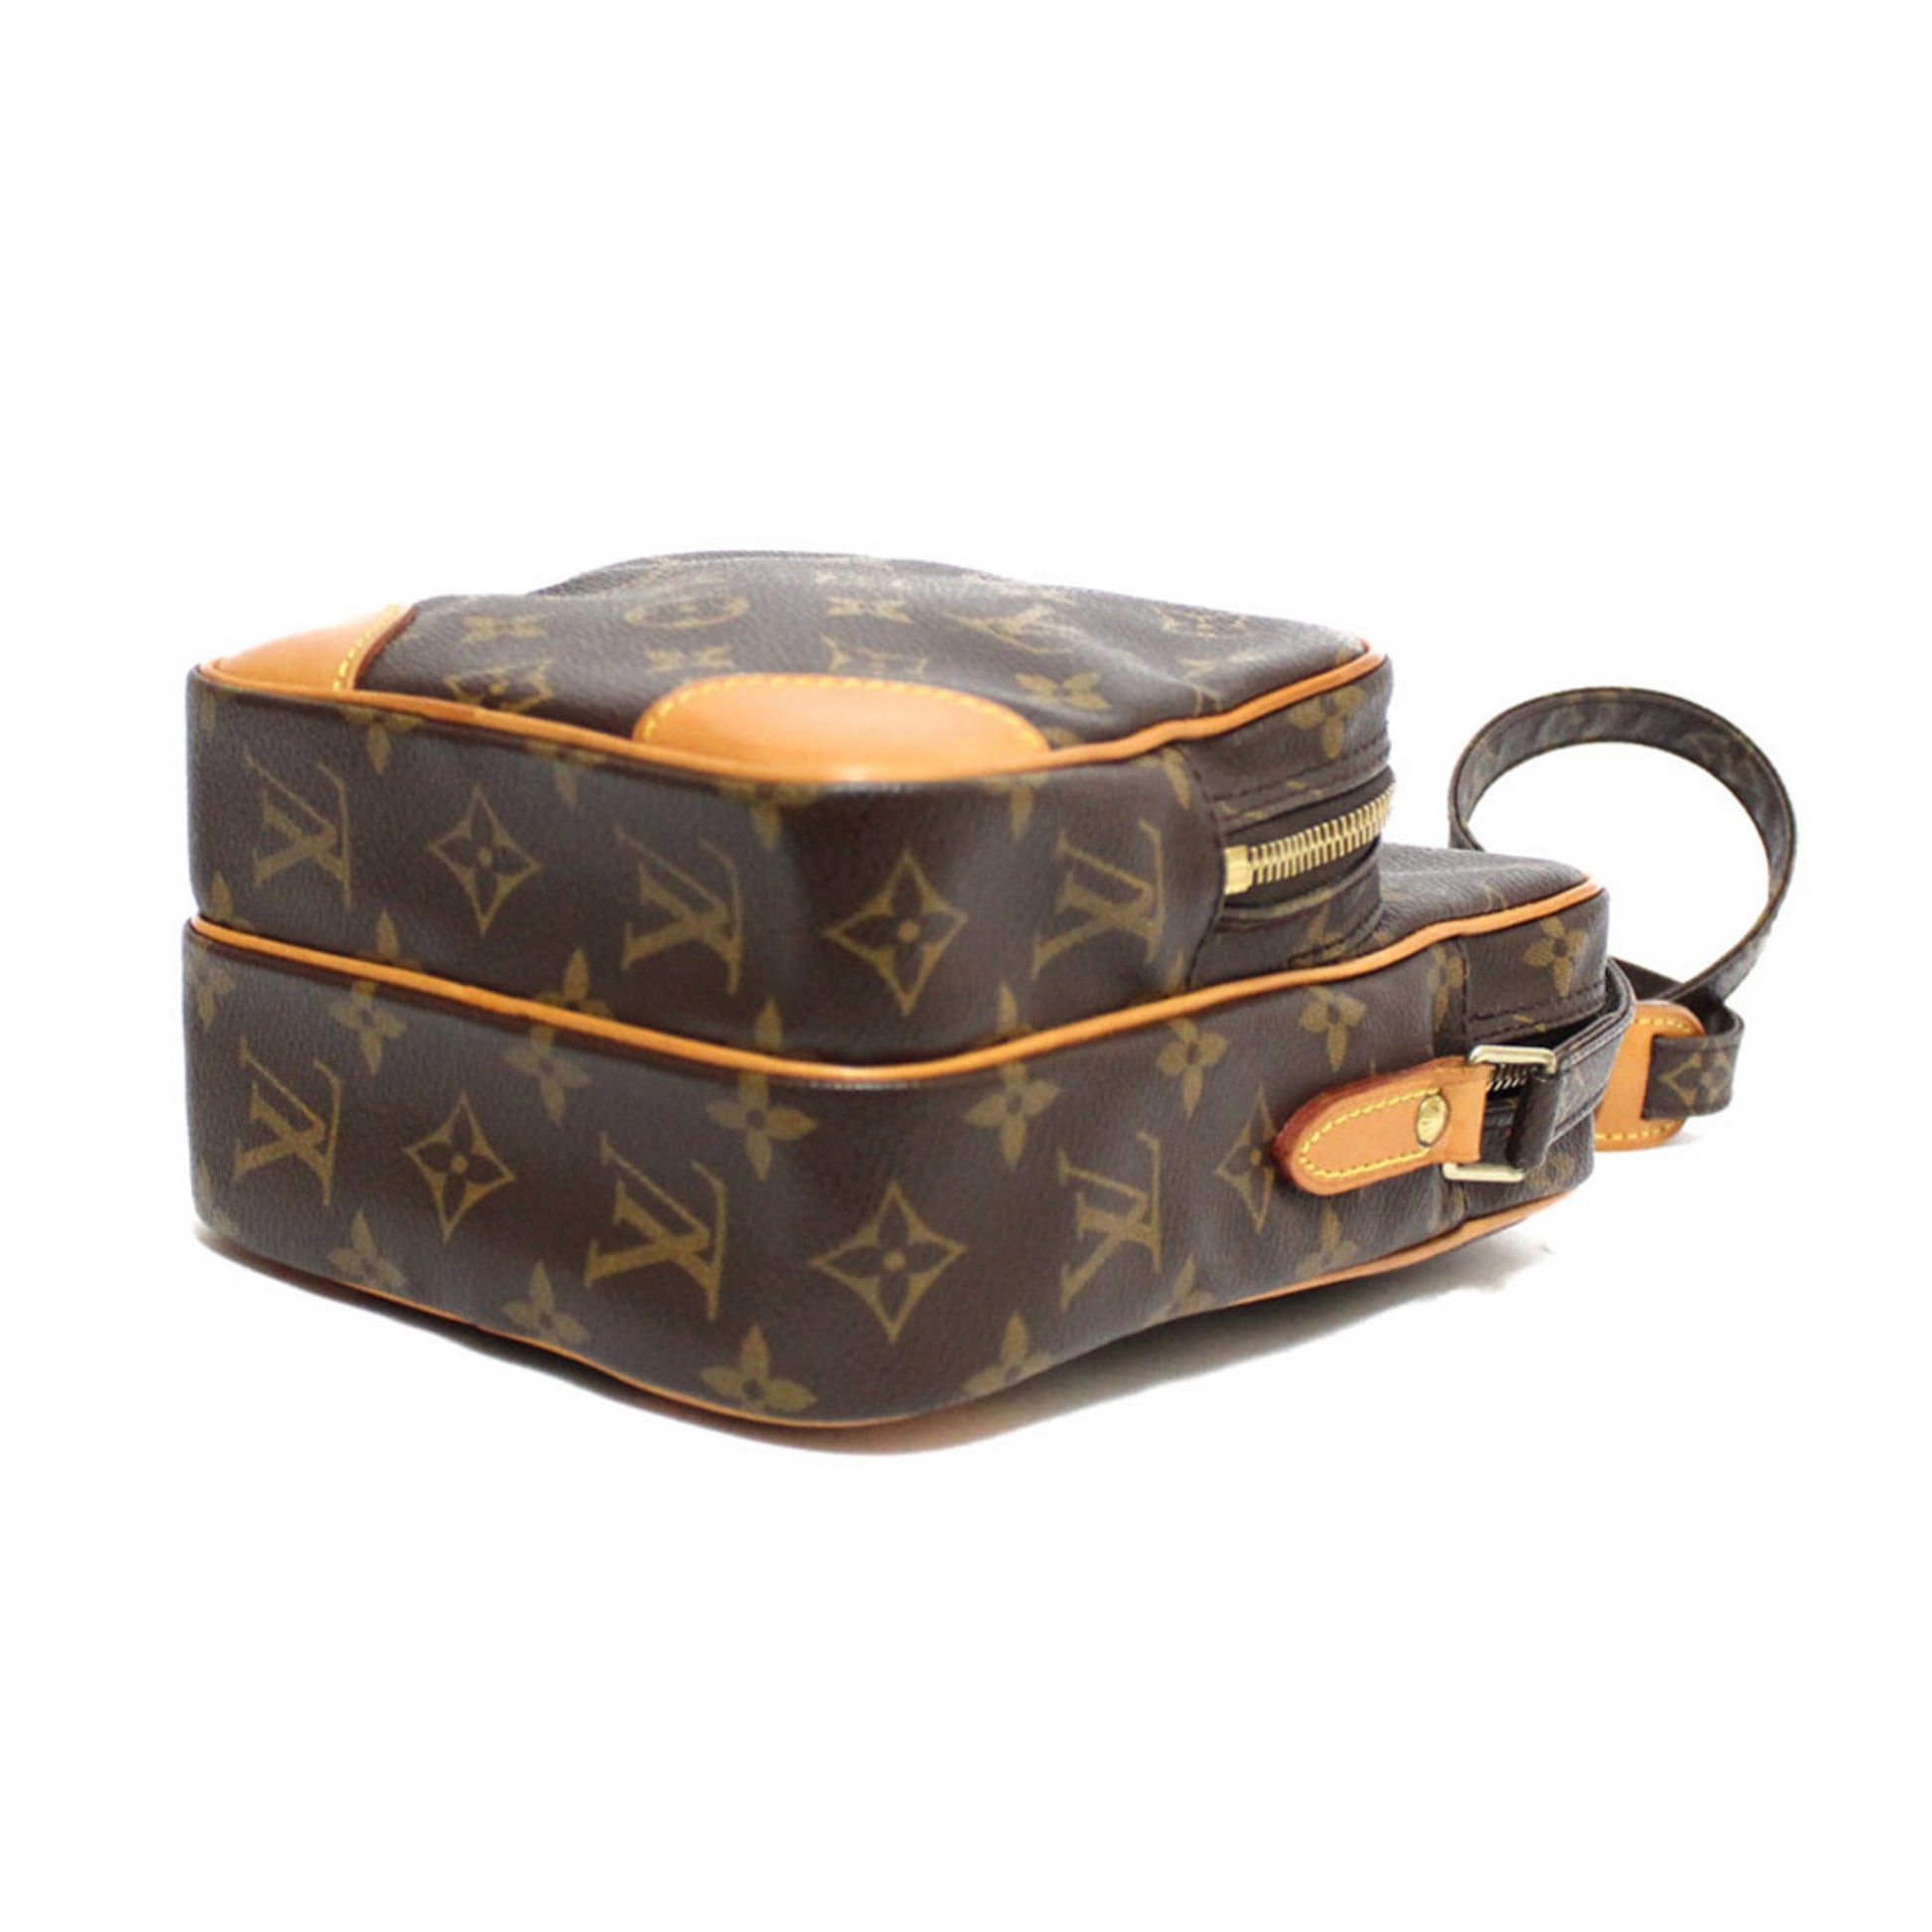 Authentic Louis Vuitton Monogram e Shoulder Cross Body Bag M45236 LV  2403G